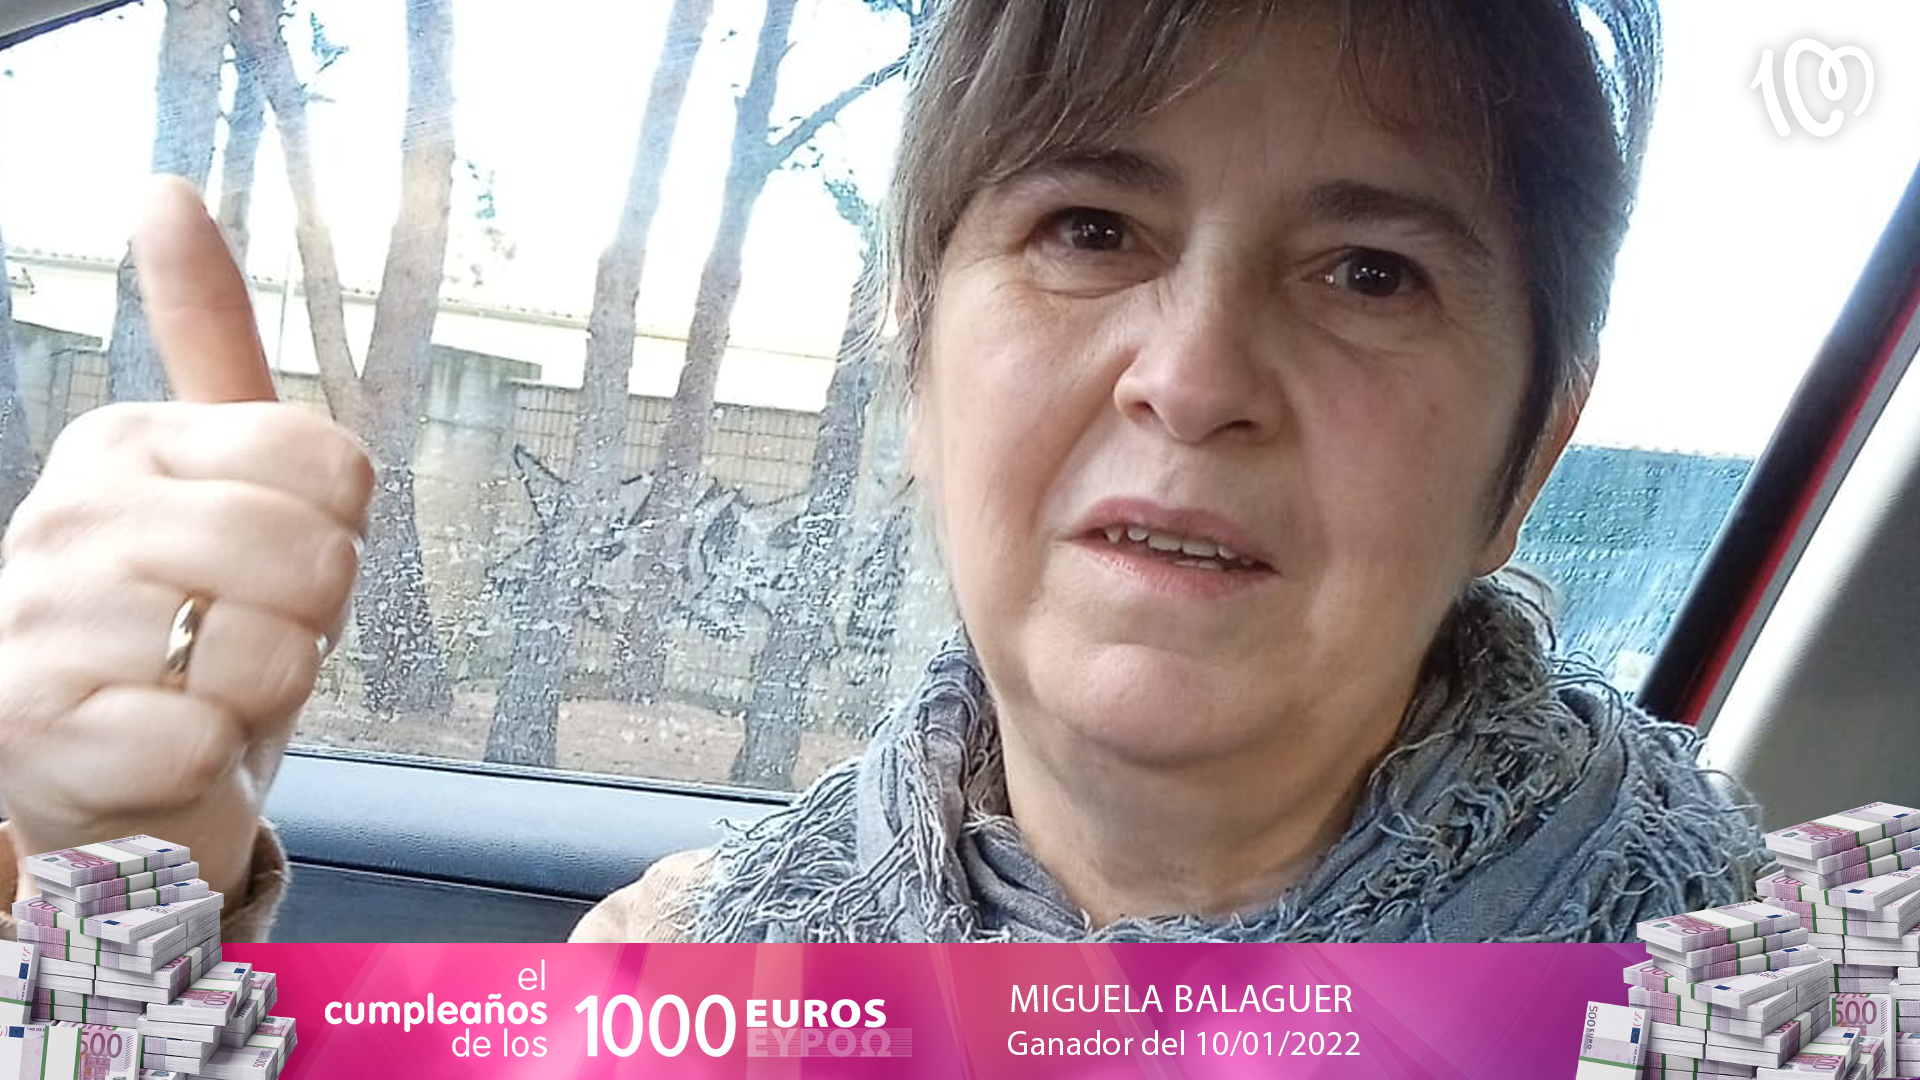 El primer Cumpleaños de los 1.000 euros en 2022 para Miguela: "Casi se me sale el corazón"